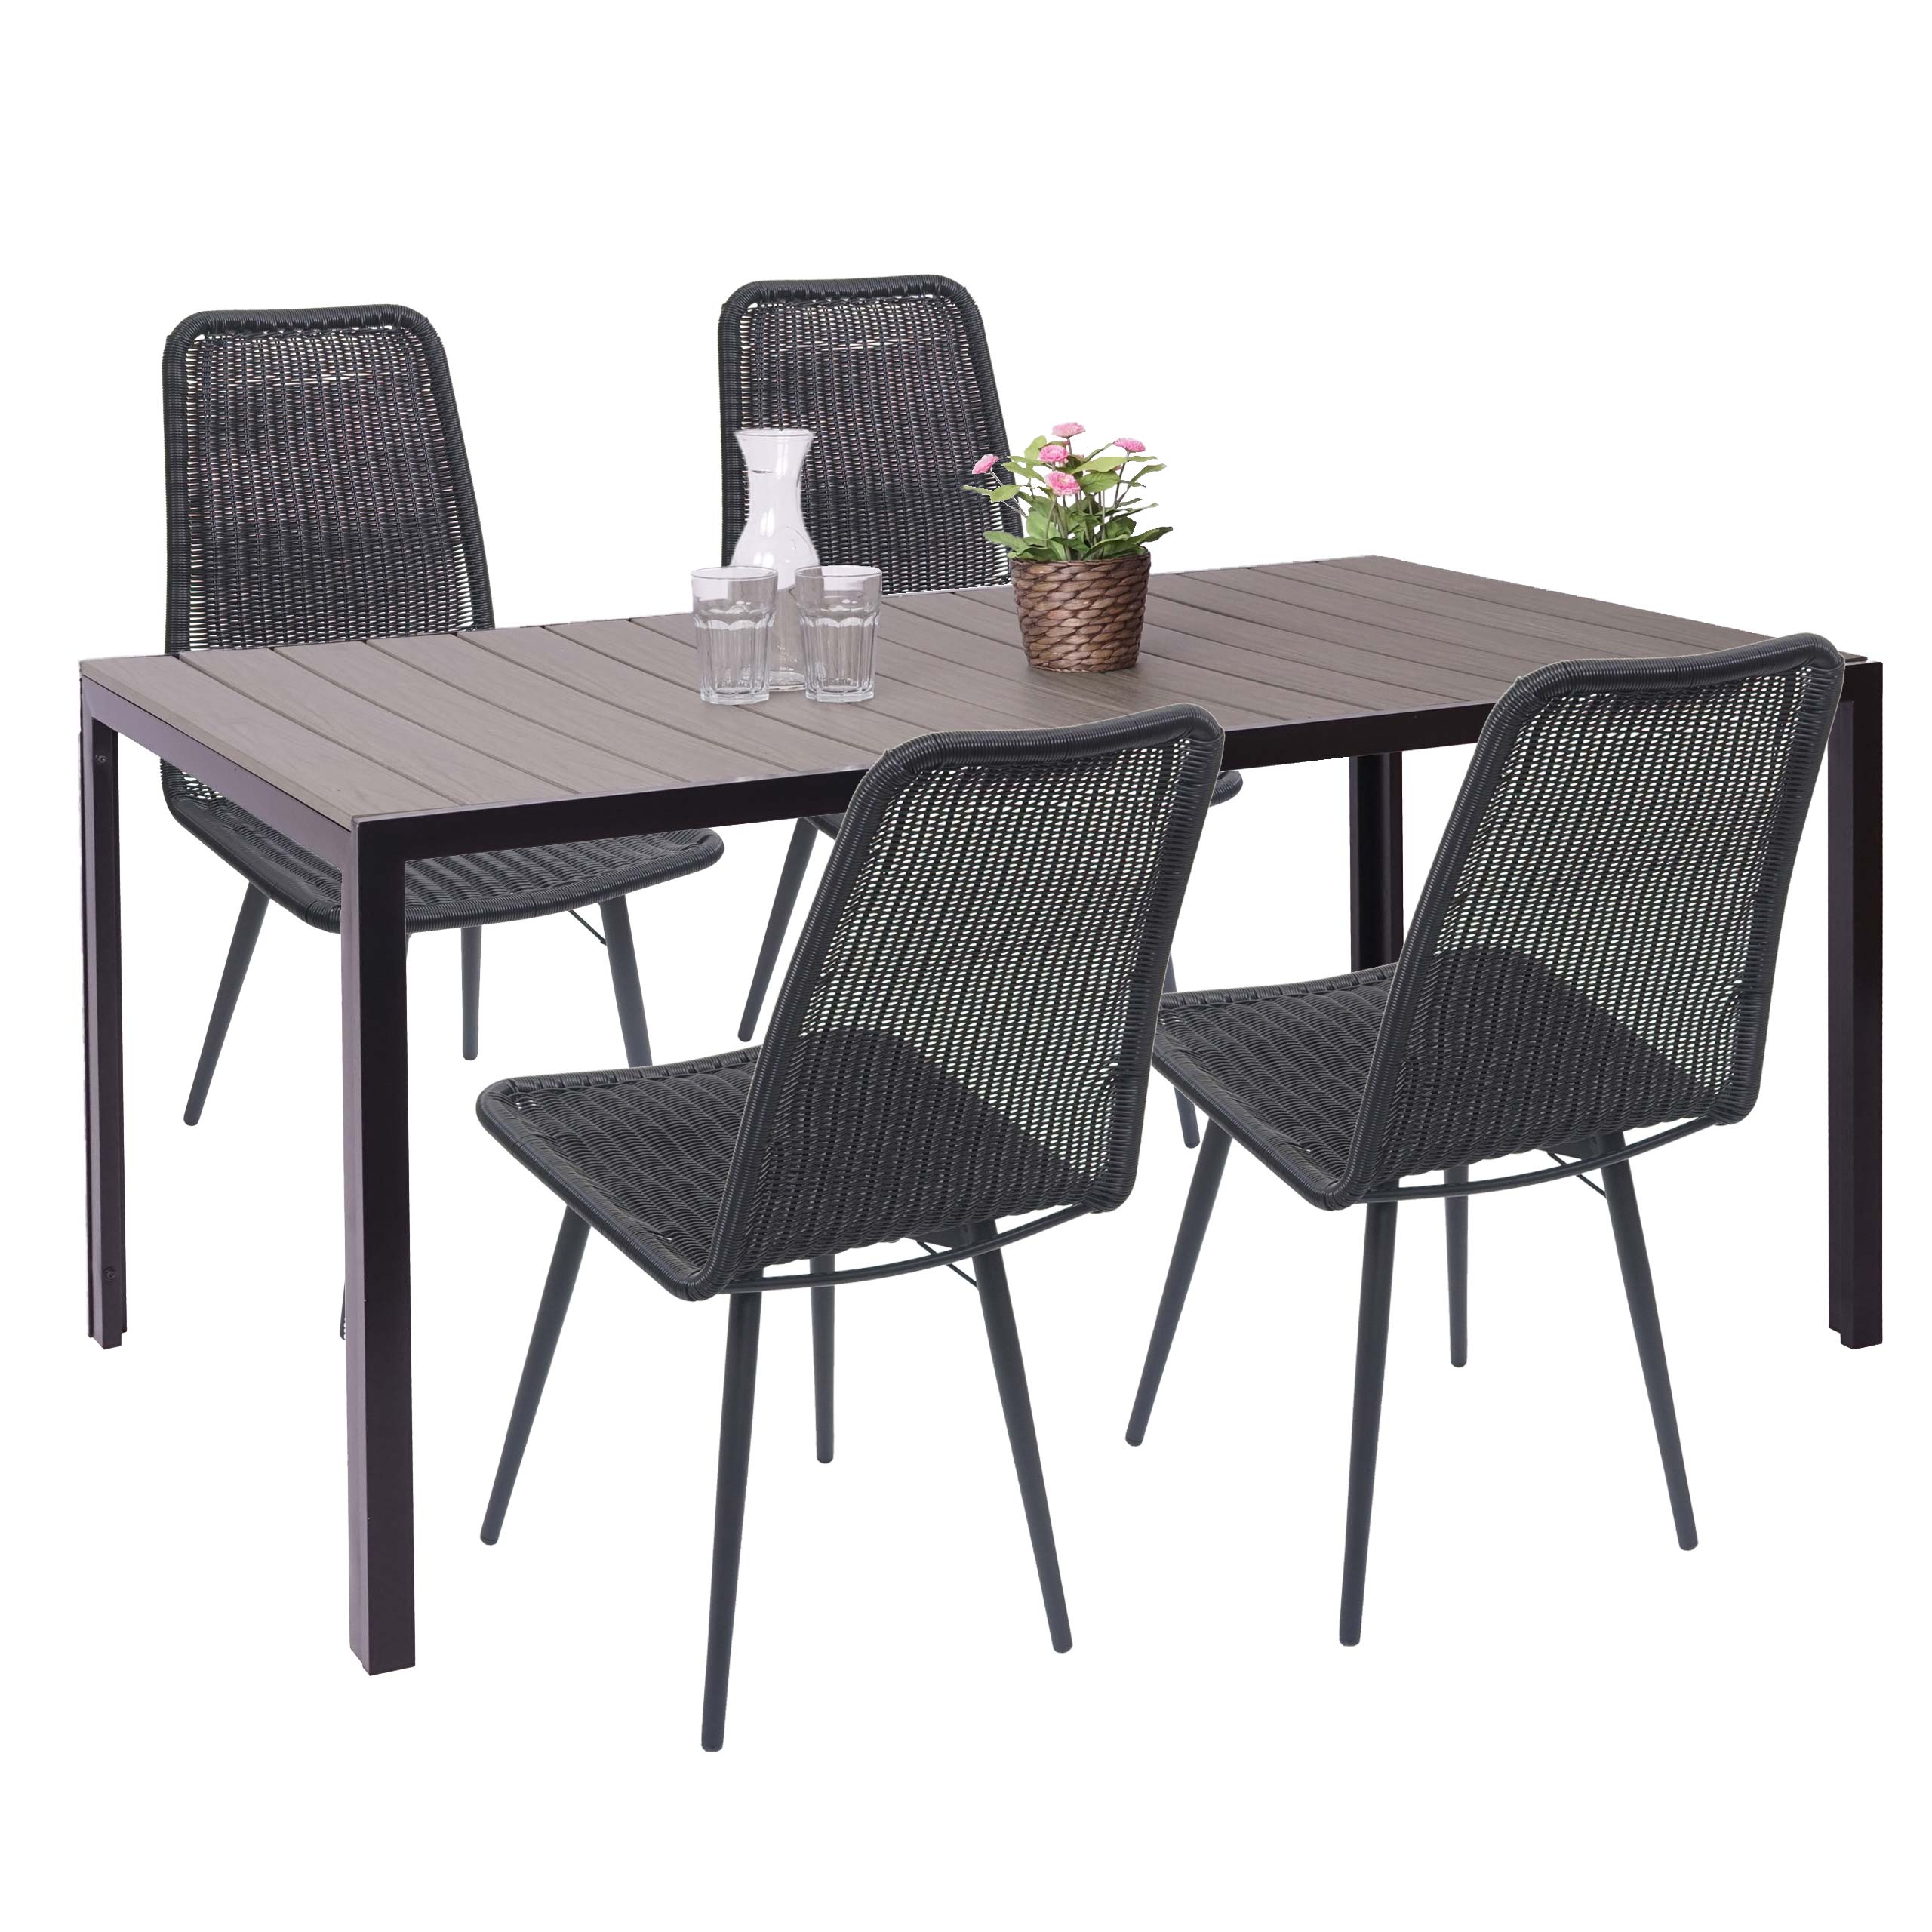 Set tavolo da pranzo con 4x sedie giardino terrazza HWC-F90 polyrattan WPC  | eBay